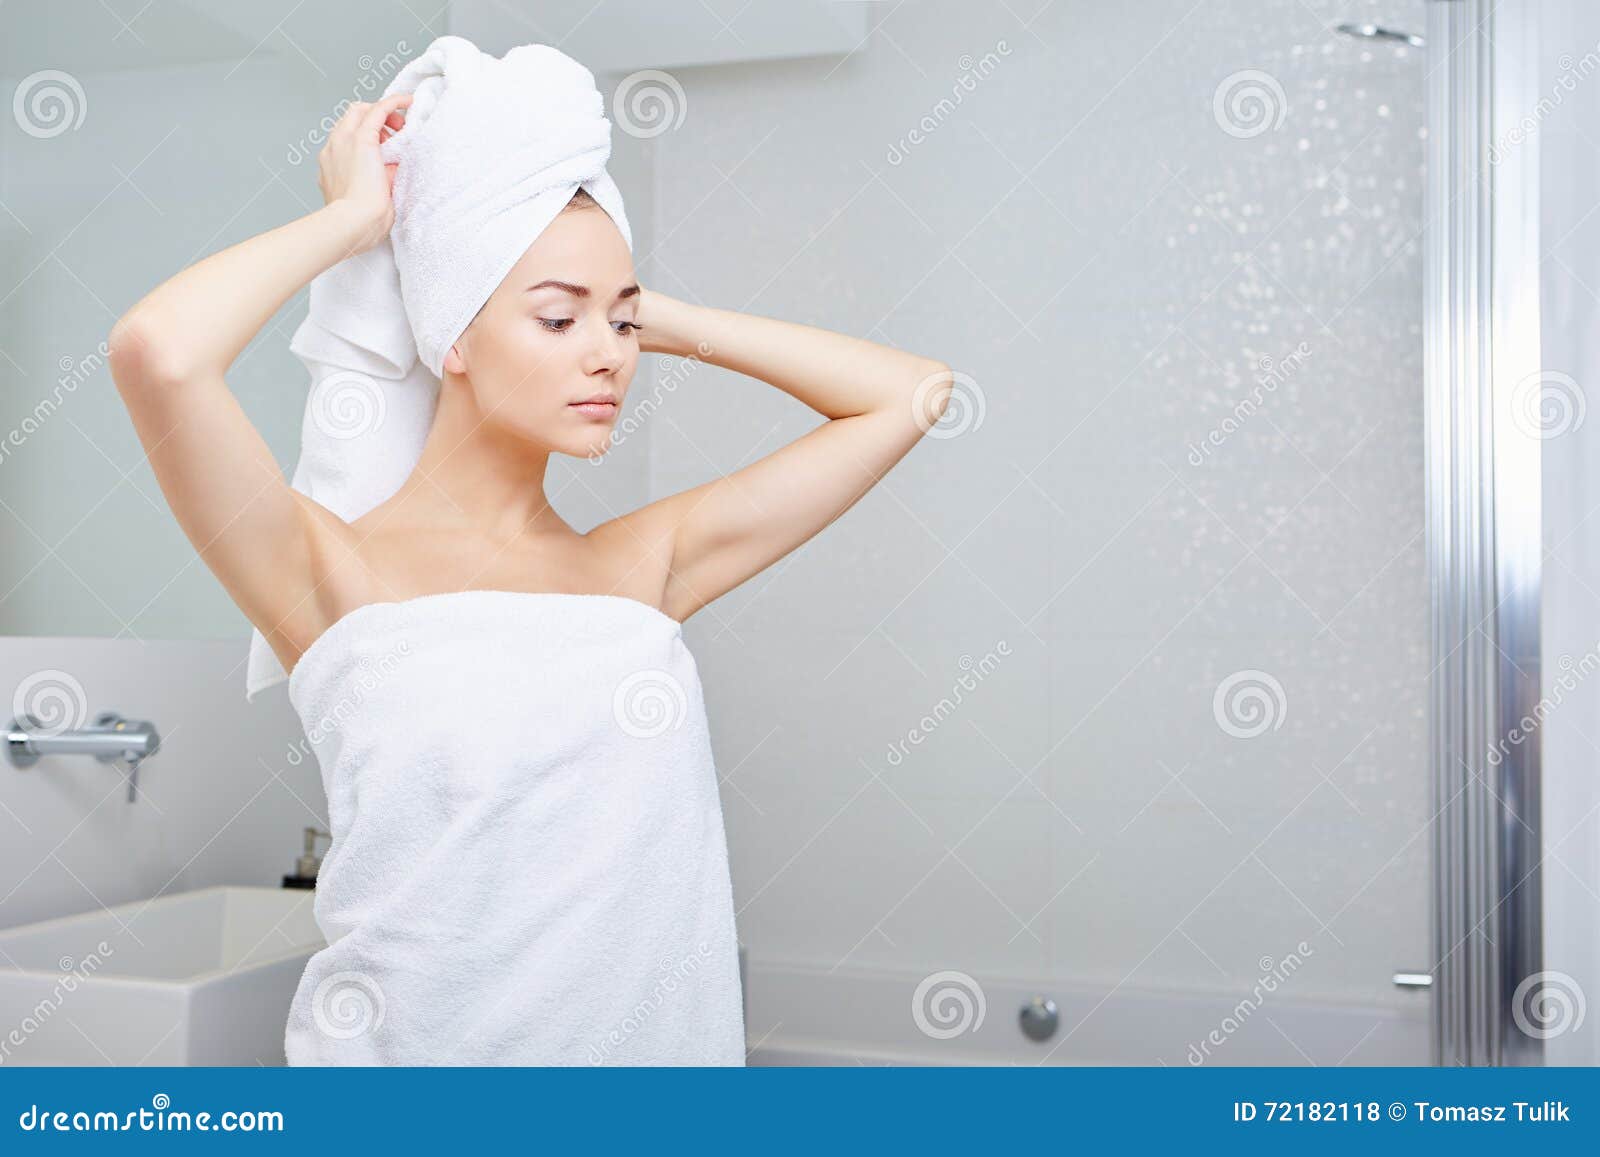 Соблазняет после душа. Девушка после душа. Девушка в полотенце. Девушка с полотенцем на голове. Красивая девушка в полотенце.